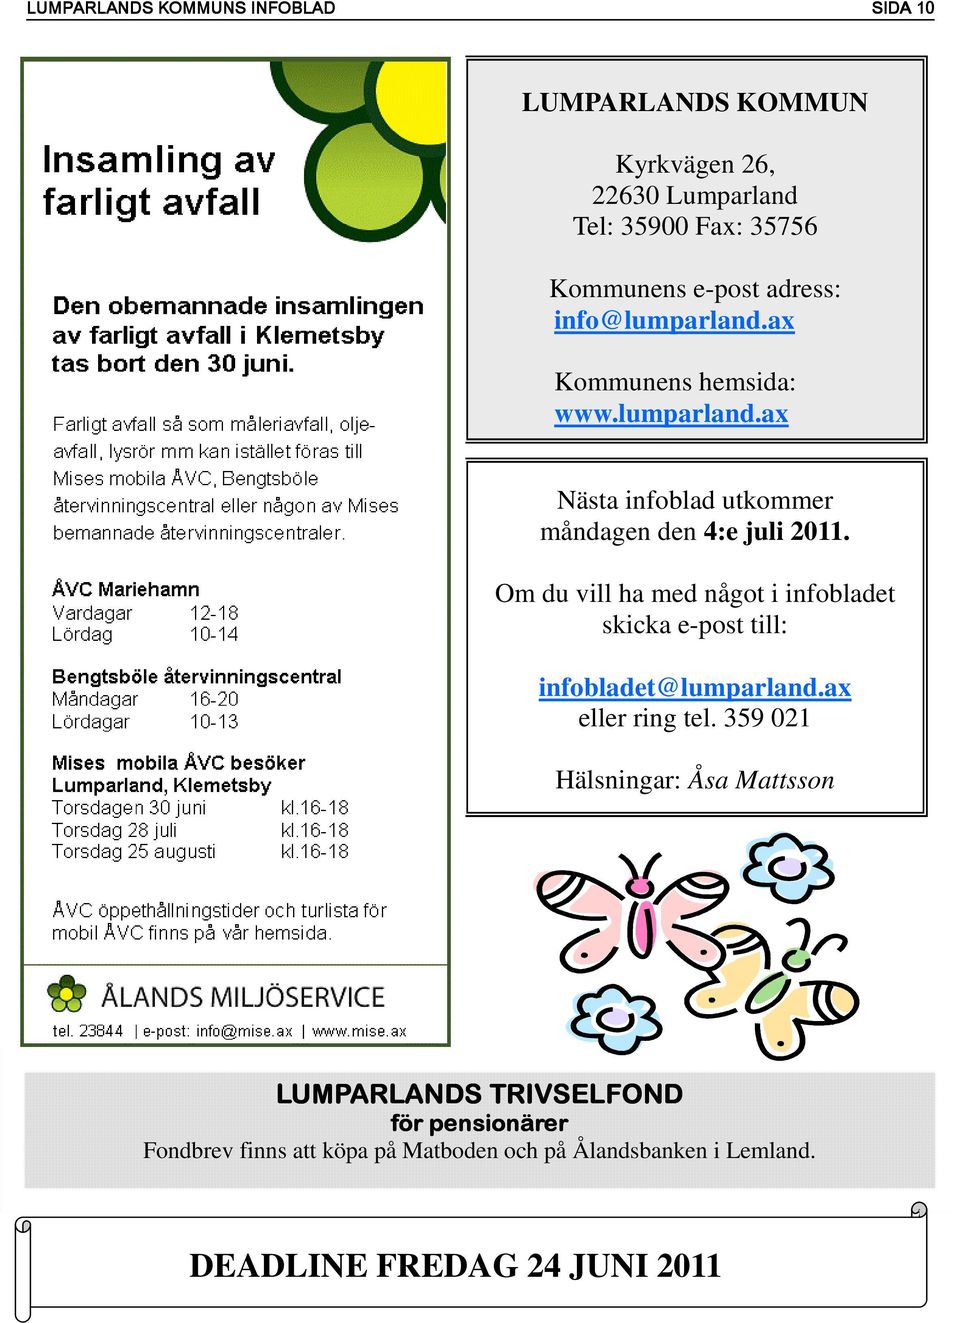 Om du vill ha med något i infobladet skicka e-post till: infobladet@lumparland.ax eller ring tel.